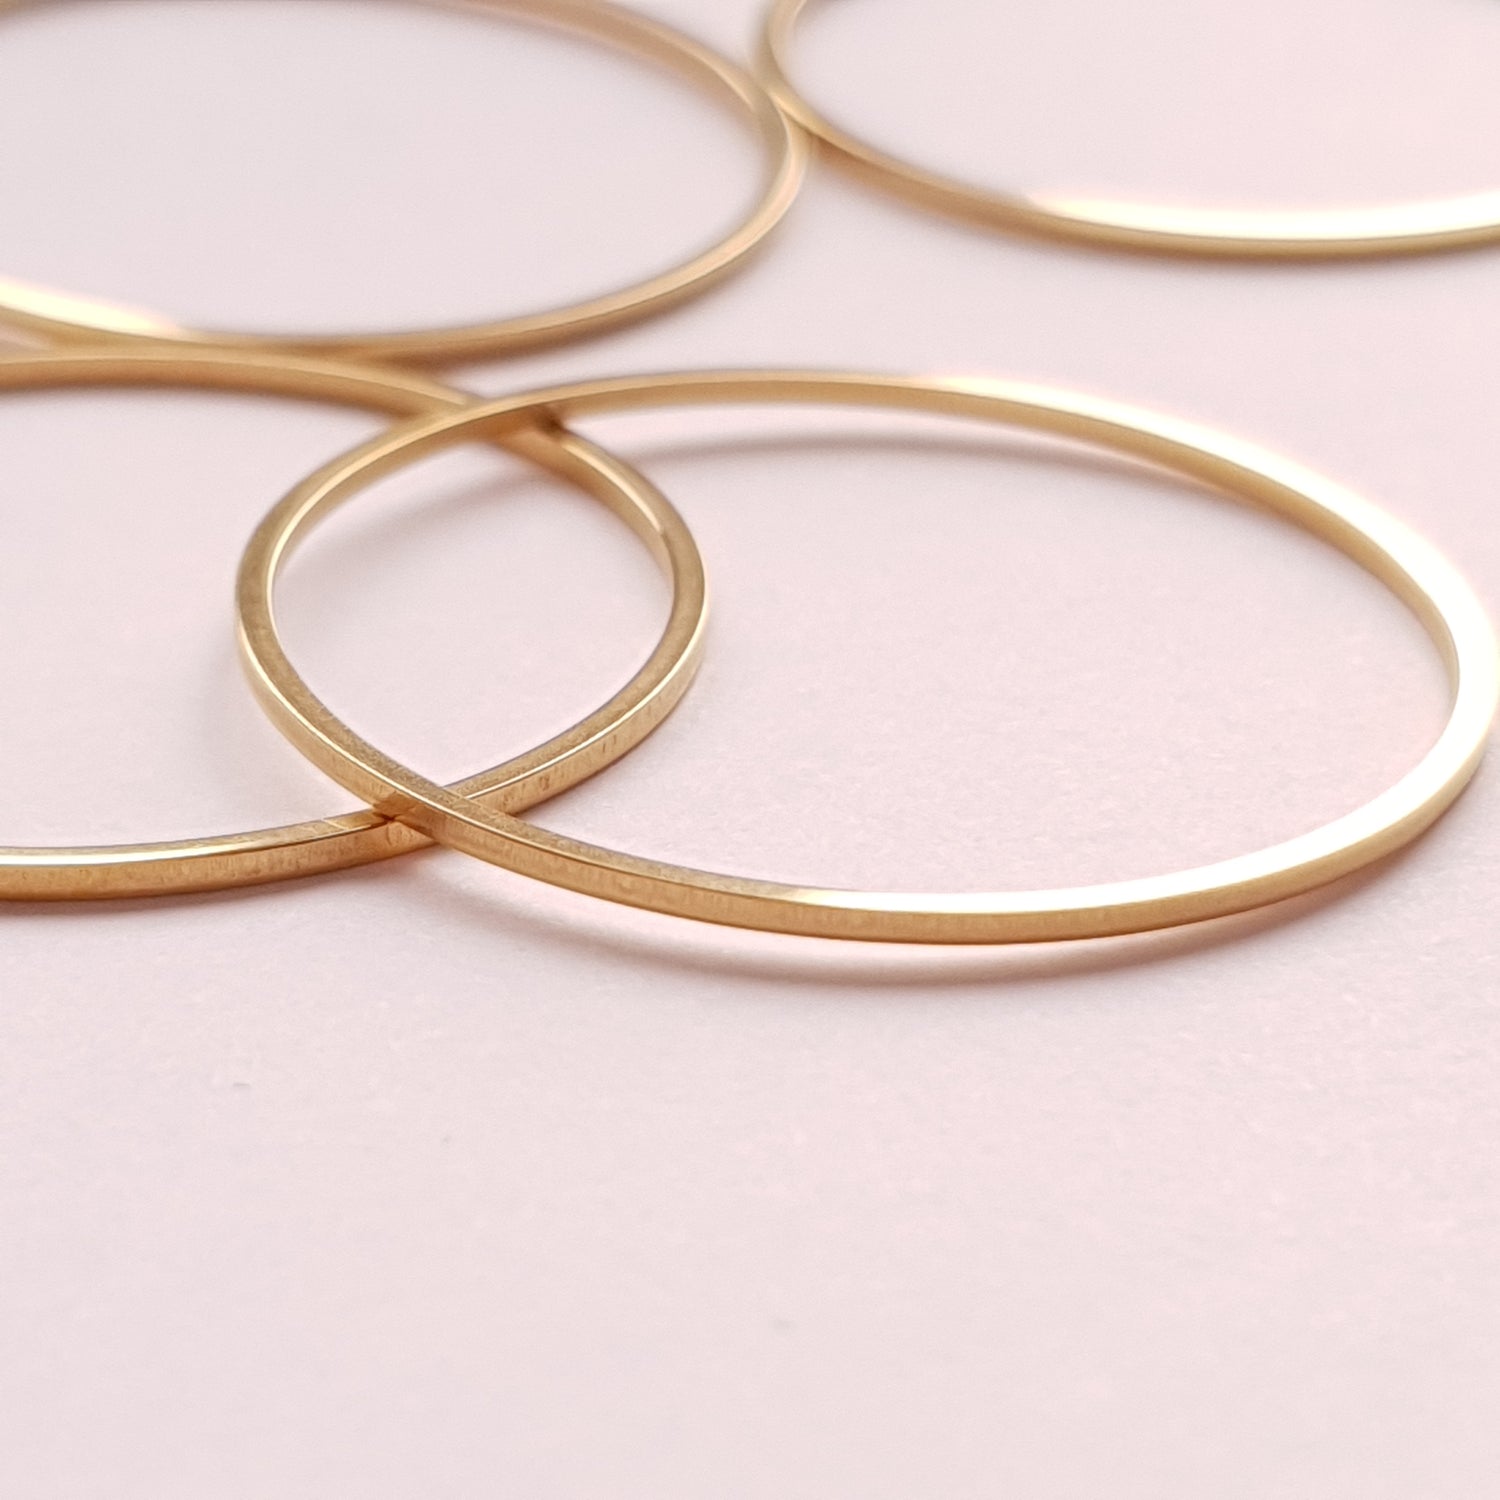 RVS ring 35mm goud voor sieraden maken, geschikt voor oorbellen of als hanger aan ketting. verkleurd niet